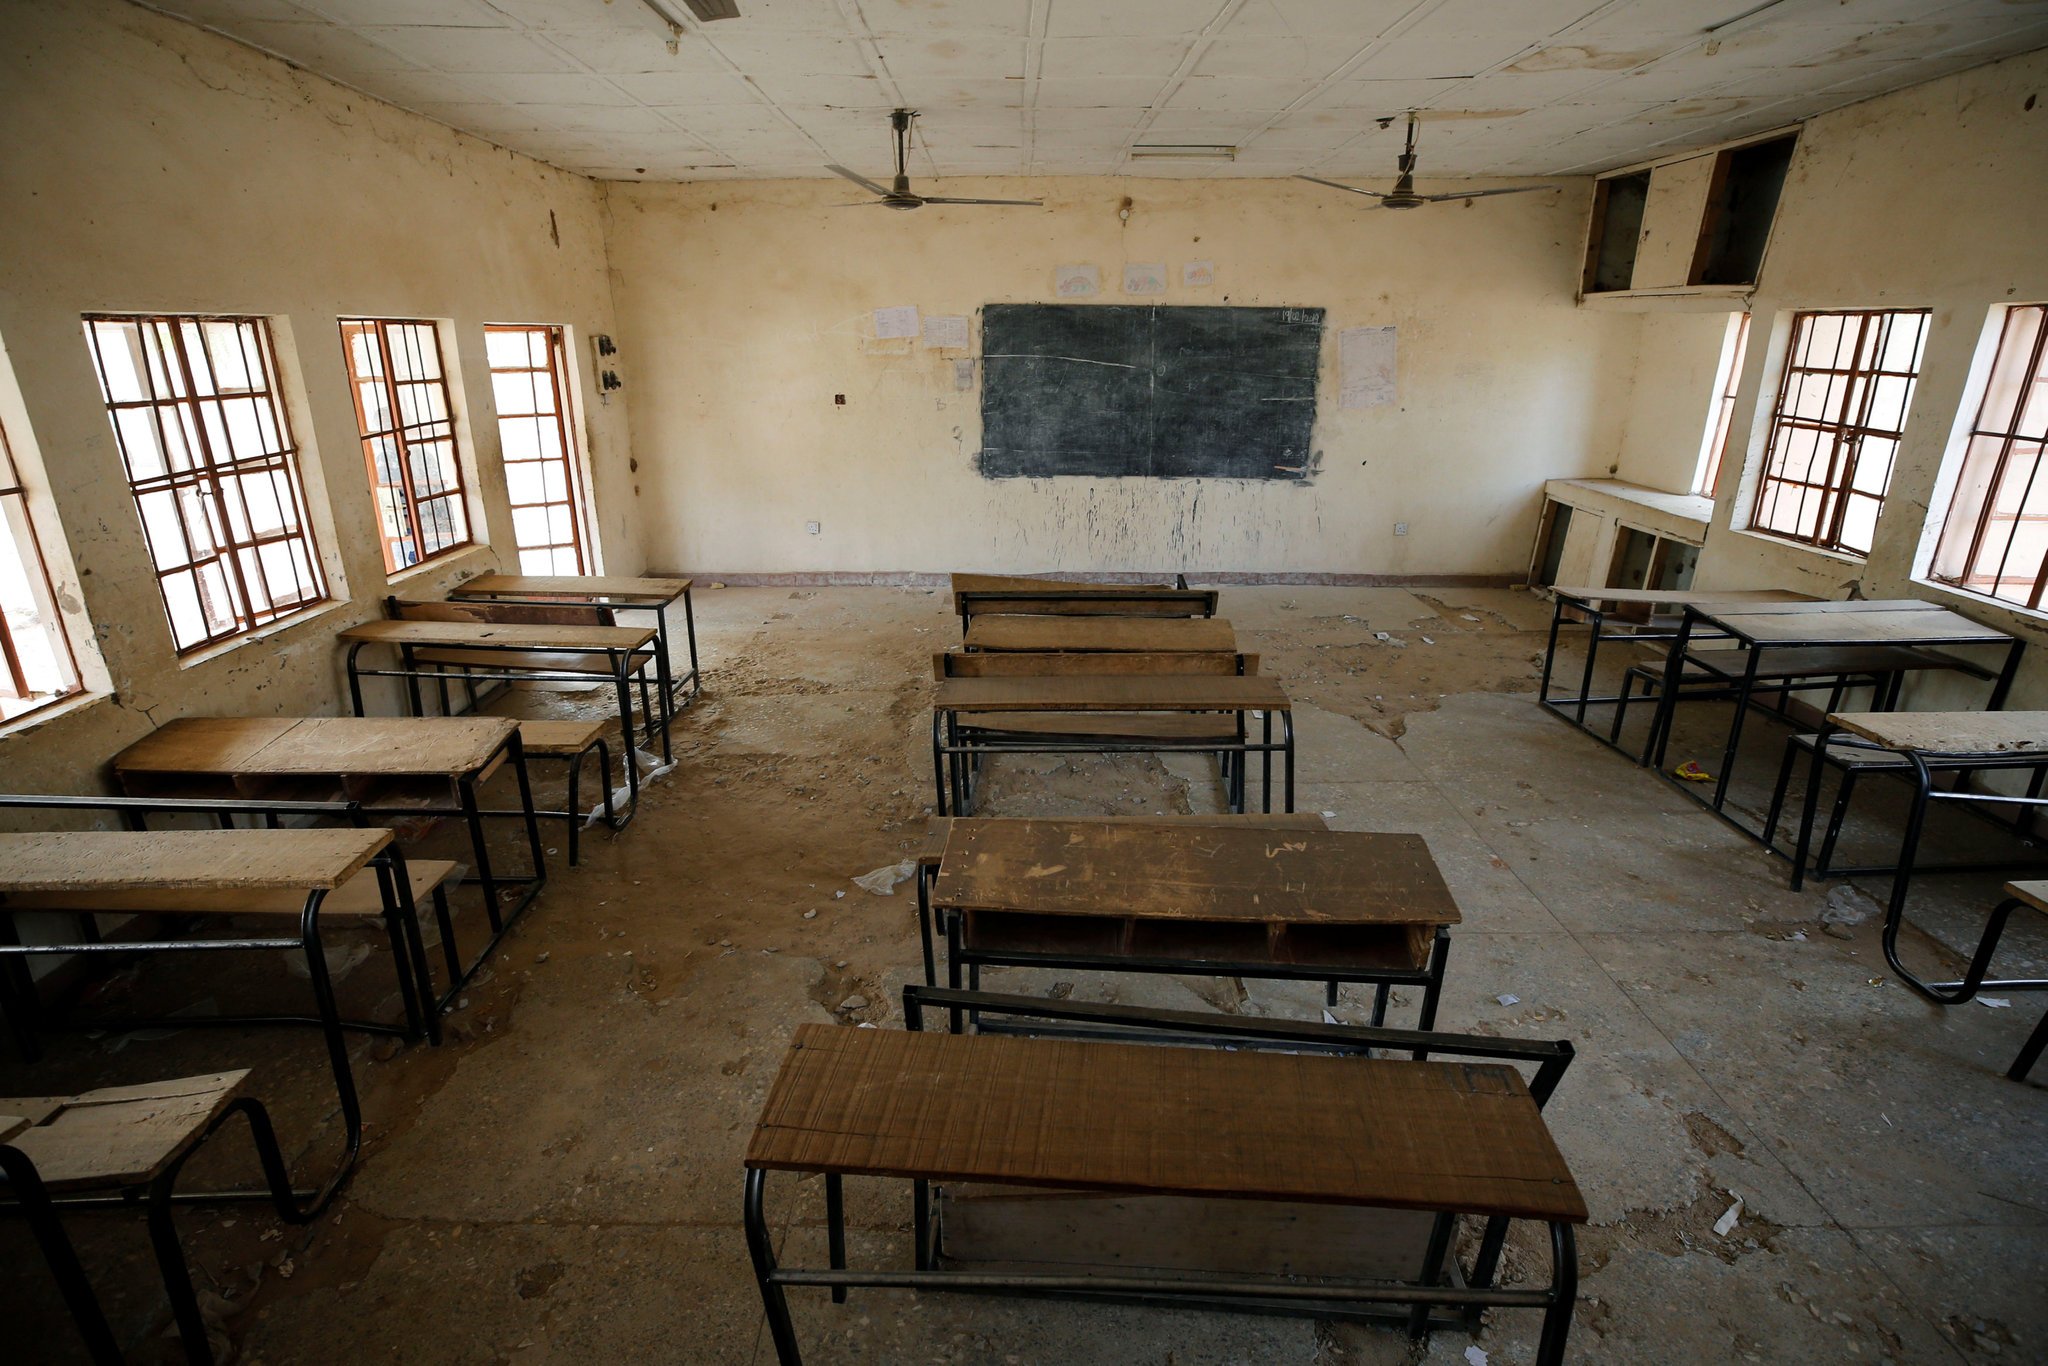 أحد صفوف المدرسة التي أختطفت منها الفتيات في دابتشي